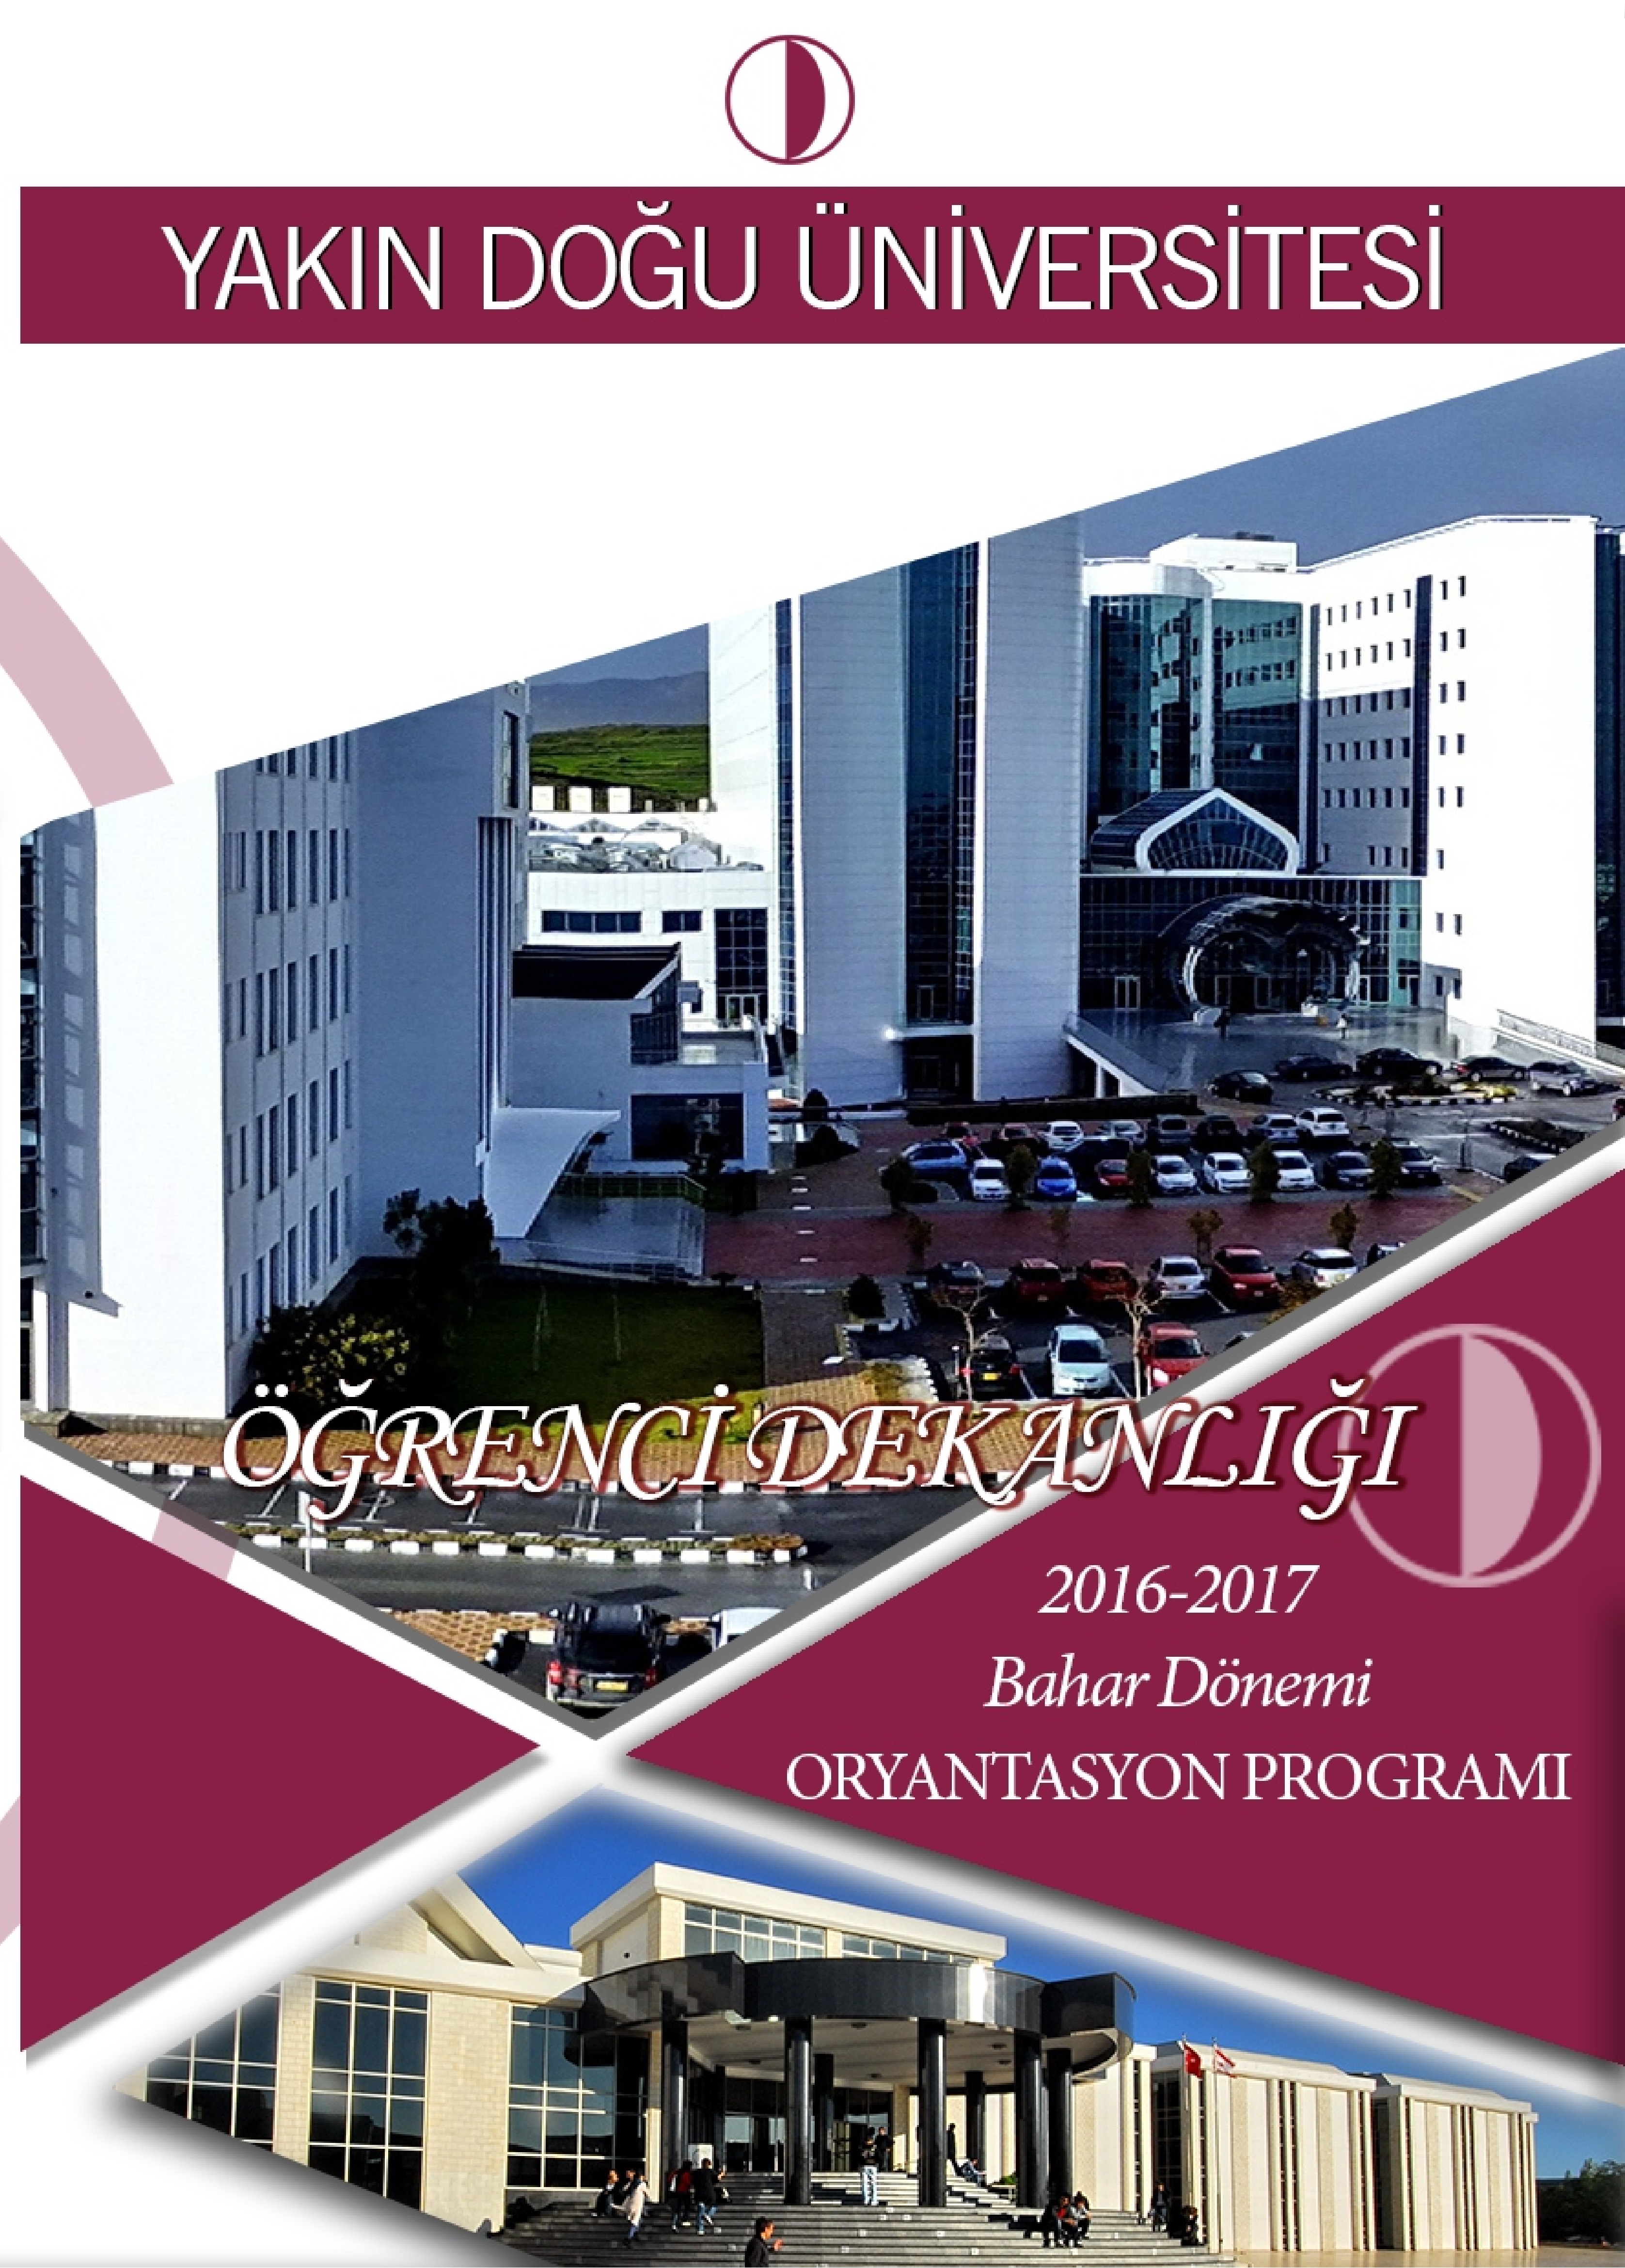 2016-2017 Bahar Dönemi Oryantasyon Programı, Yeni Öğrencilere Yakın Doğu Üniversitesi’ni ve Kuzey Kıbrıs’ı Tanıma Fırsatı Sunuyor